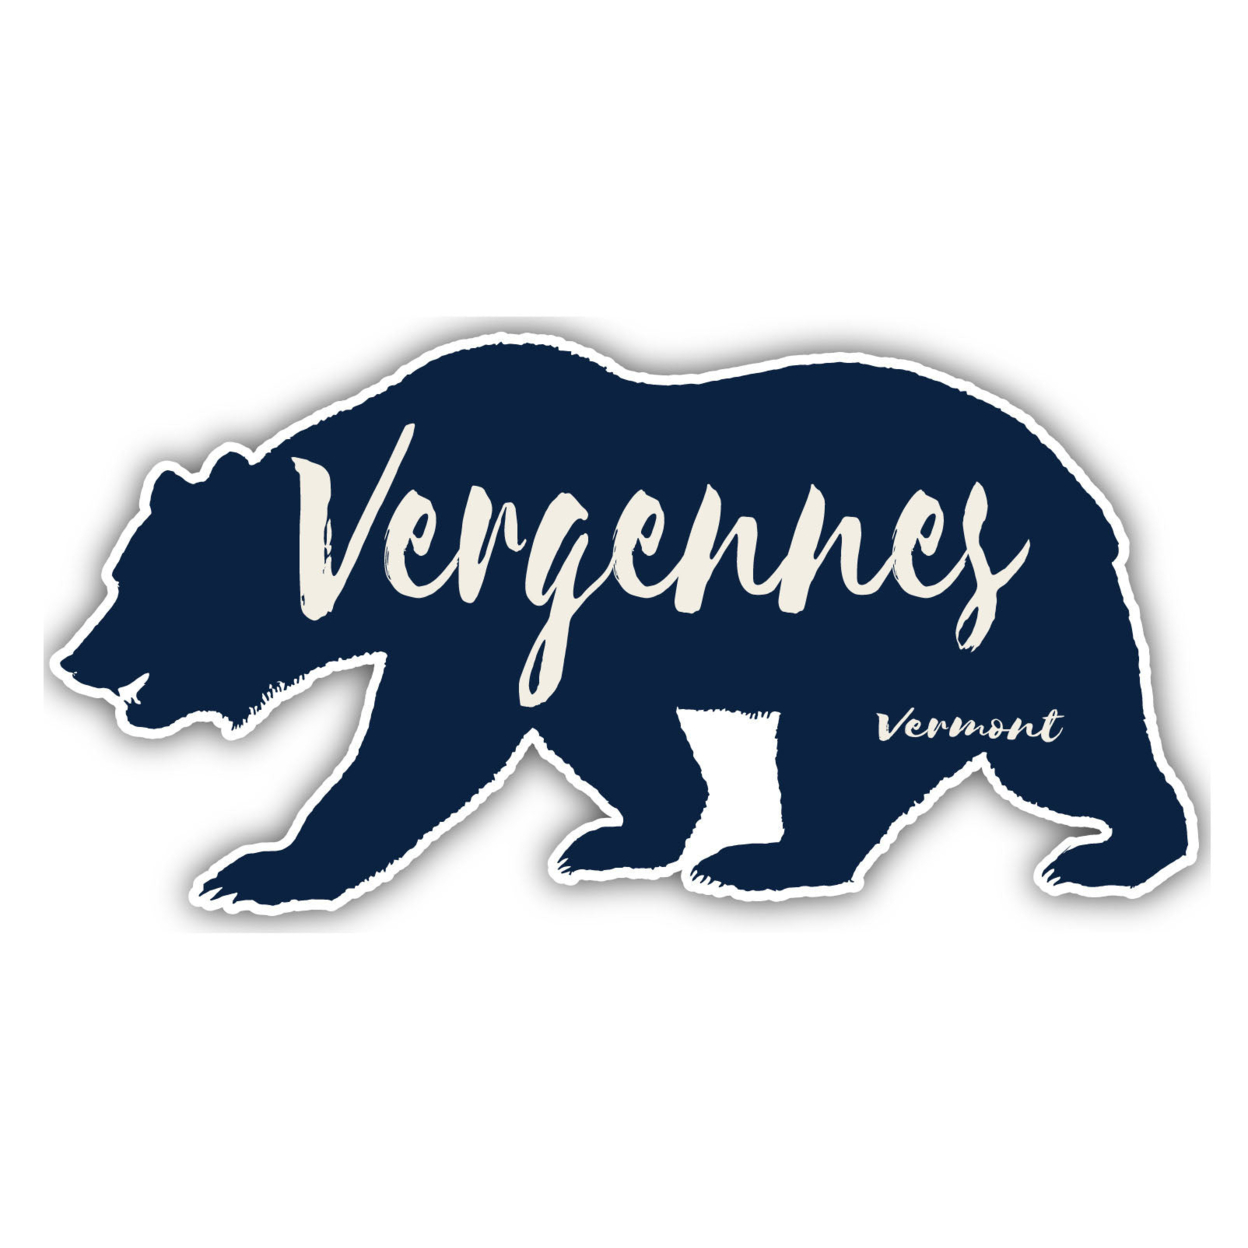 Vergennes Vermont Souvenir Decorative Stickers (Choose Theme And Size) - Single Unit, 4-Inch, Bear